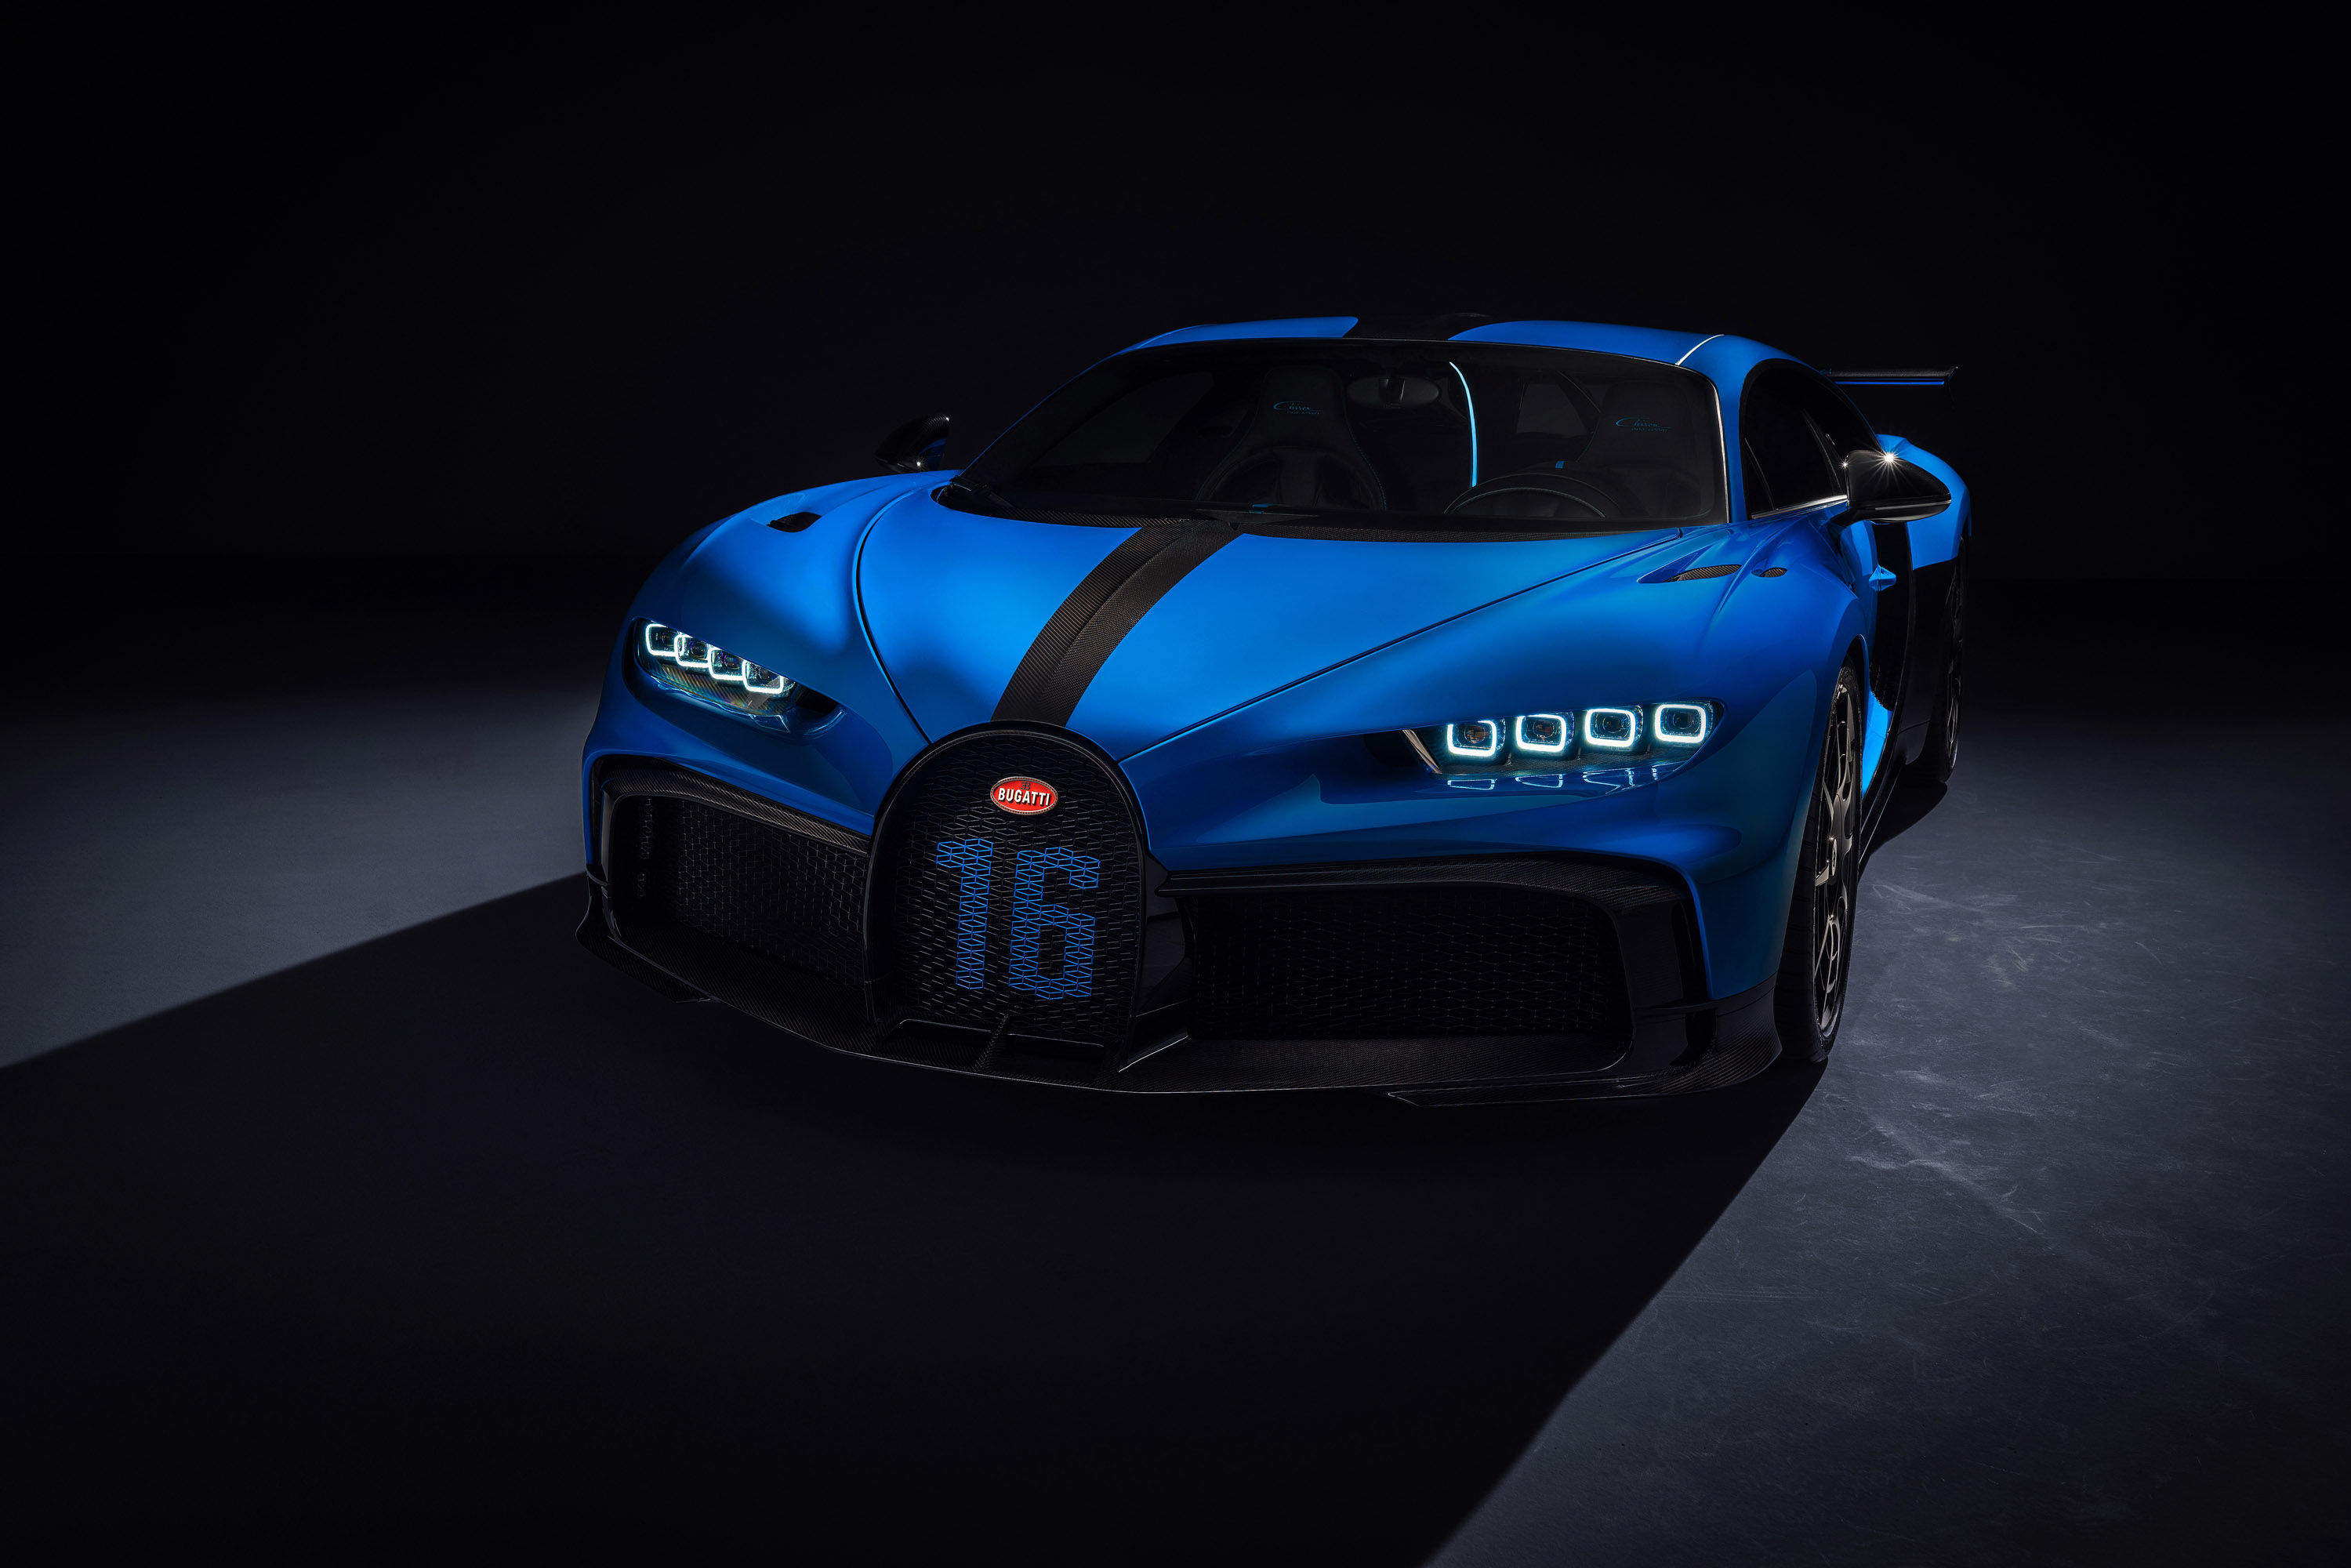 С плоской передней частью и динамичным дизайном с впечатляющим задним спойлером, новый Bugatti Chiron Pur Sport жаждет поворотов и сложных дорог.